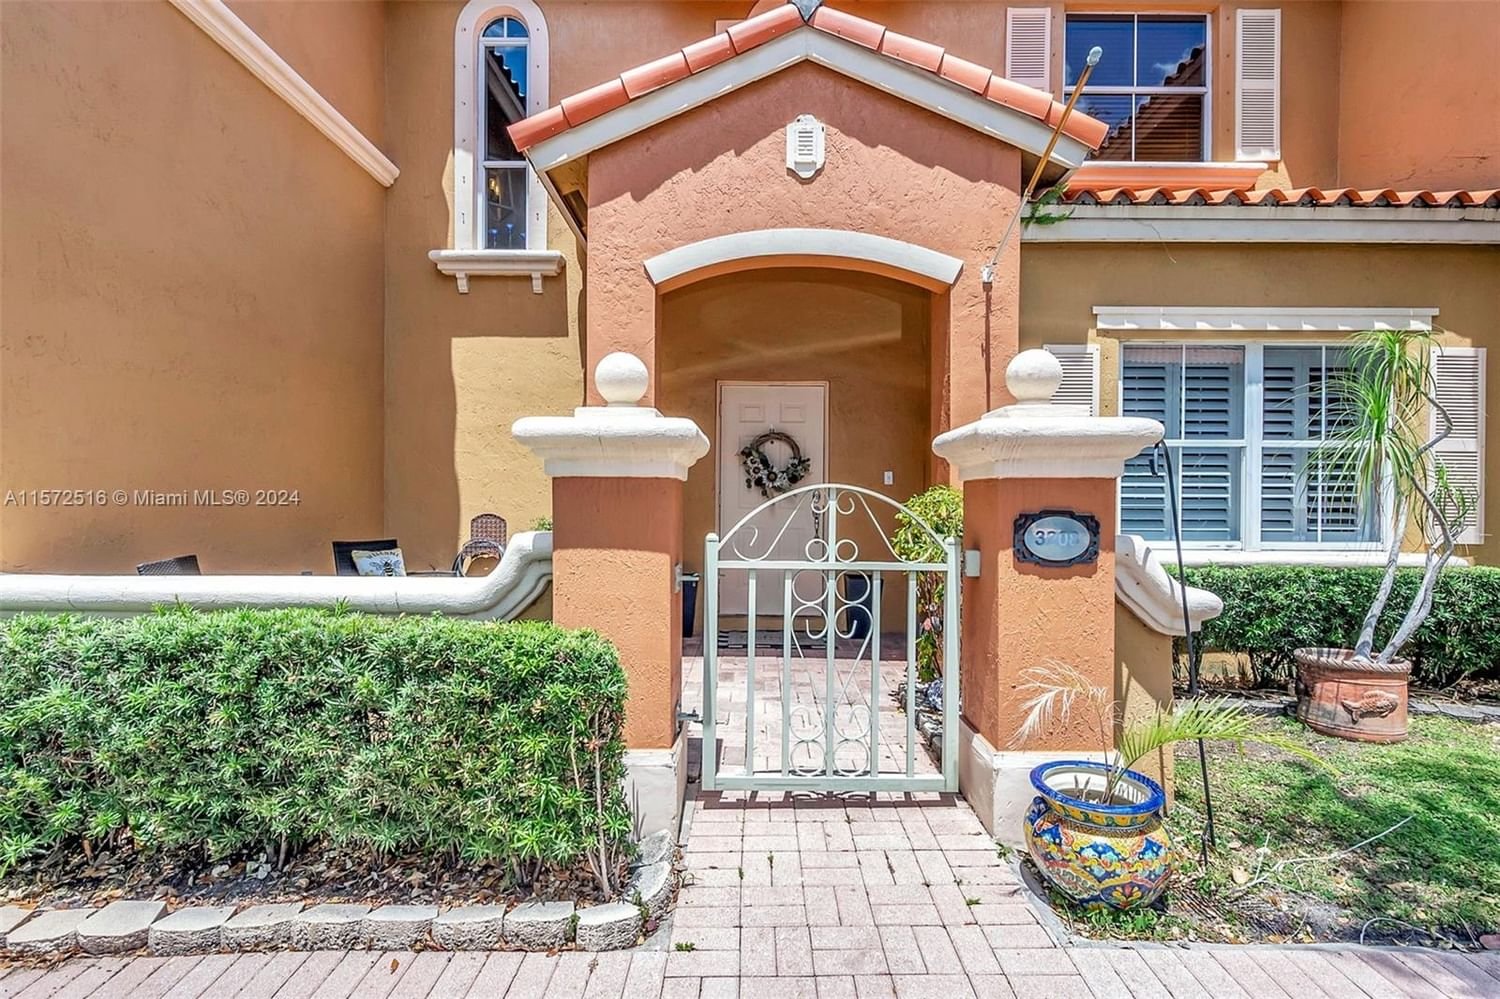 Real estate property located at 8401 139th Ter #3208, Miami-Dade County, VILLA VIZCAYA CONDO, Miami Lakes, FL